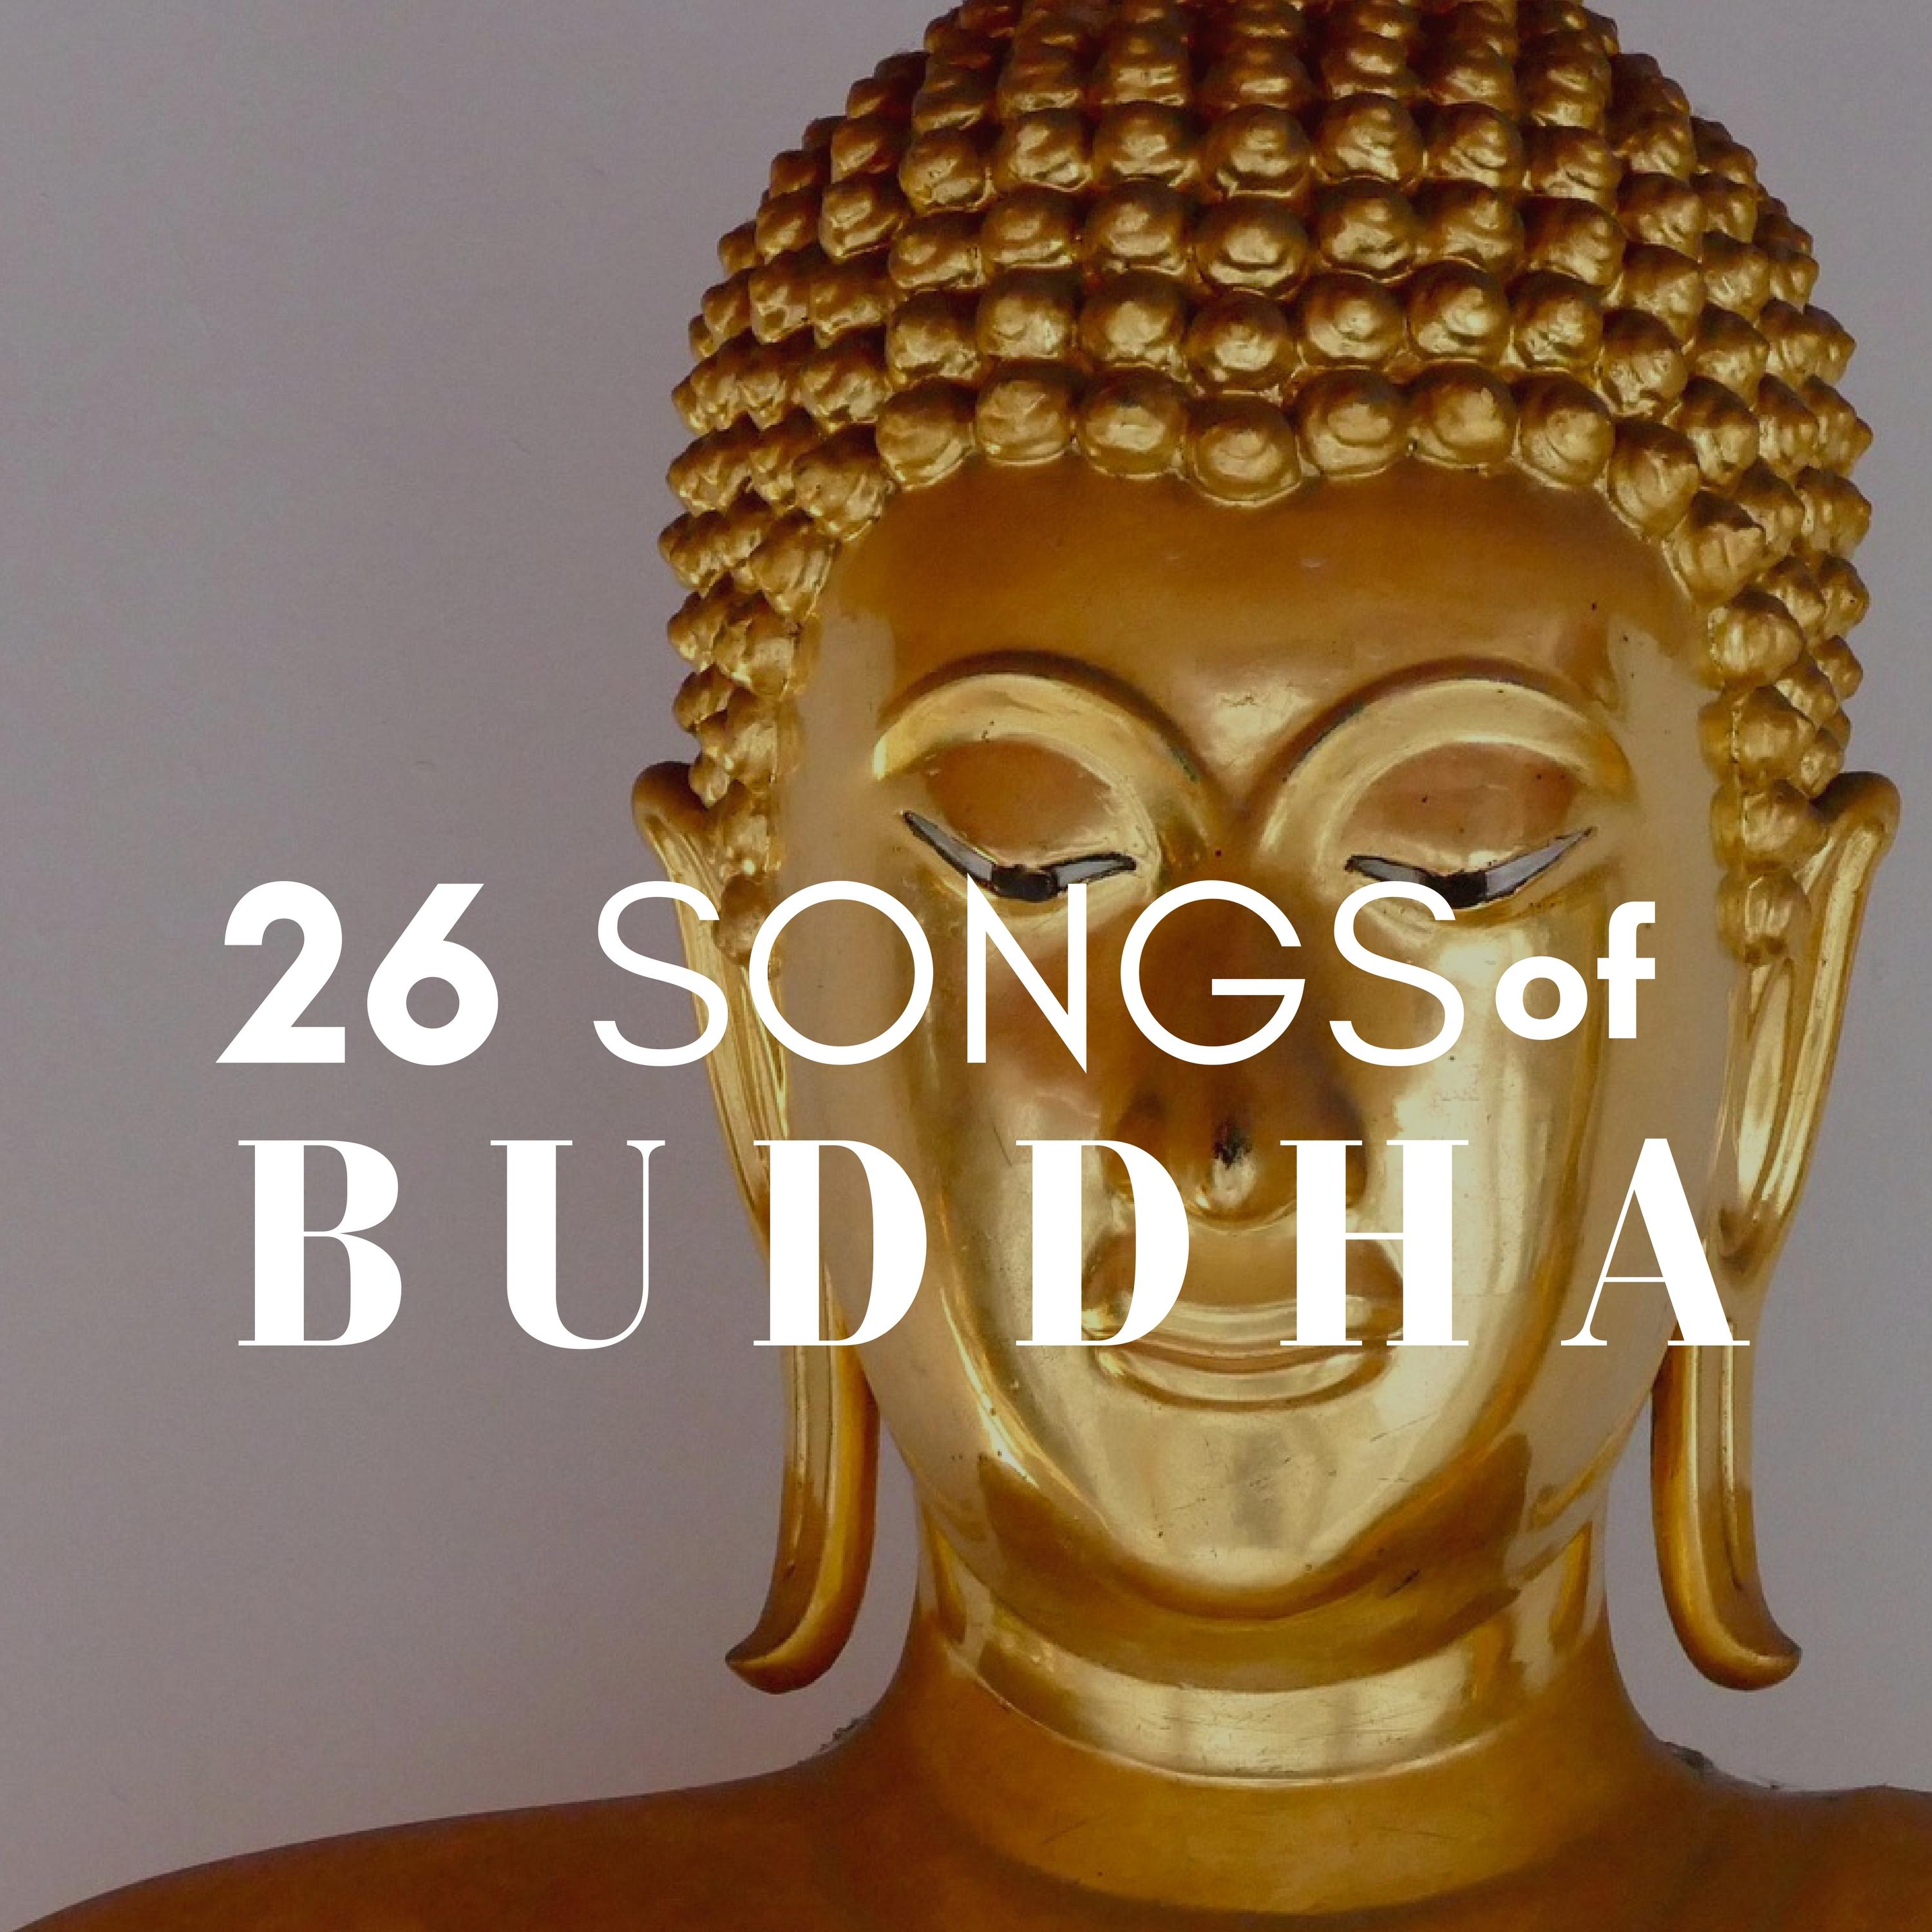 Song of Buddha